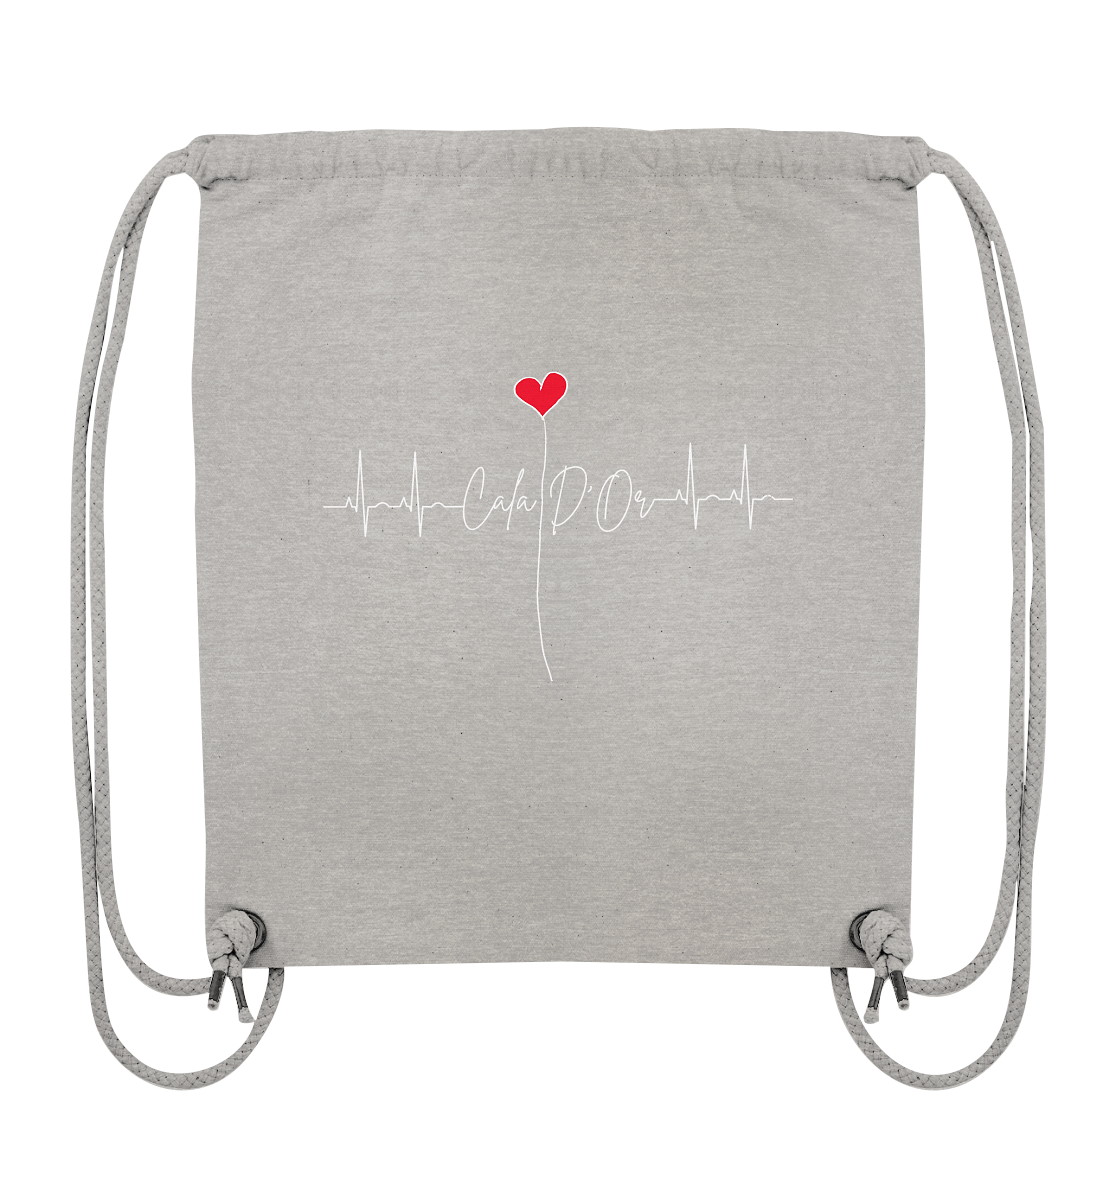 Hellgraue Gym-Bag mit weißer Aufschrift Cala D'Or und einem Herz